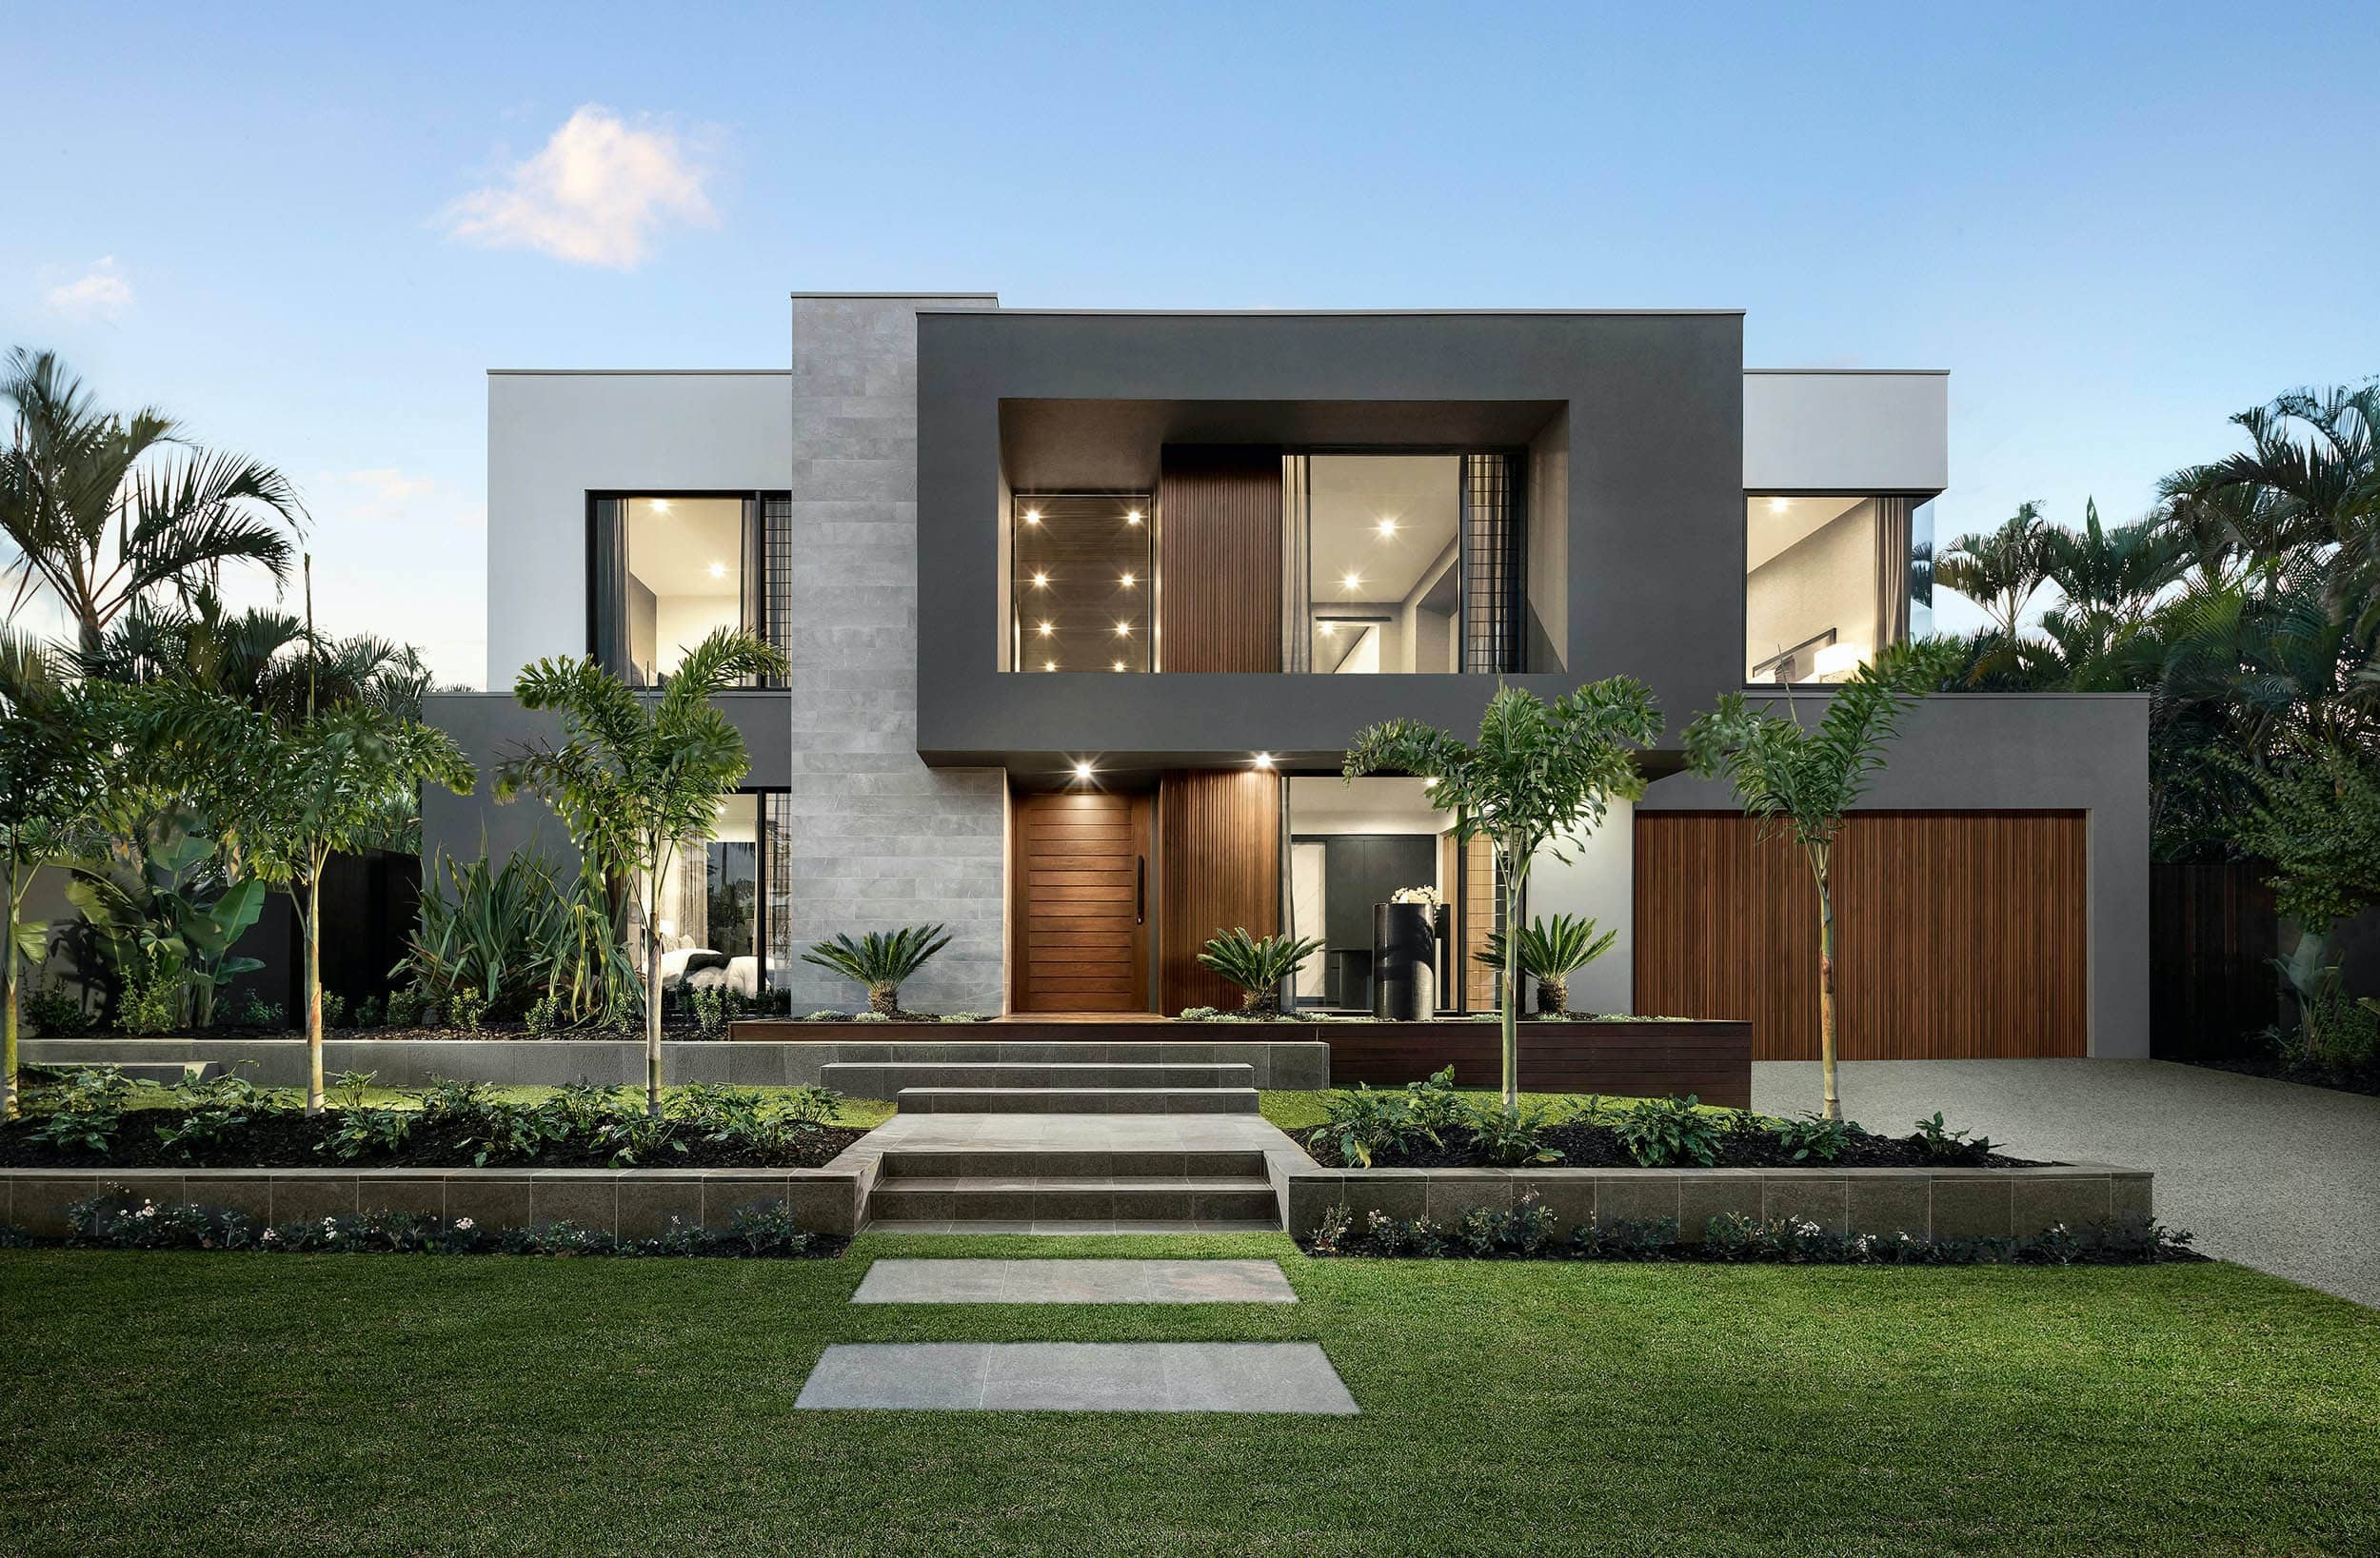 metricon riviera show home dark neutral interior design grey modern home facade